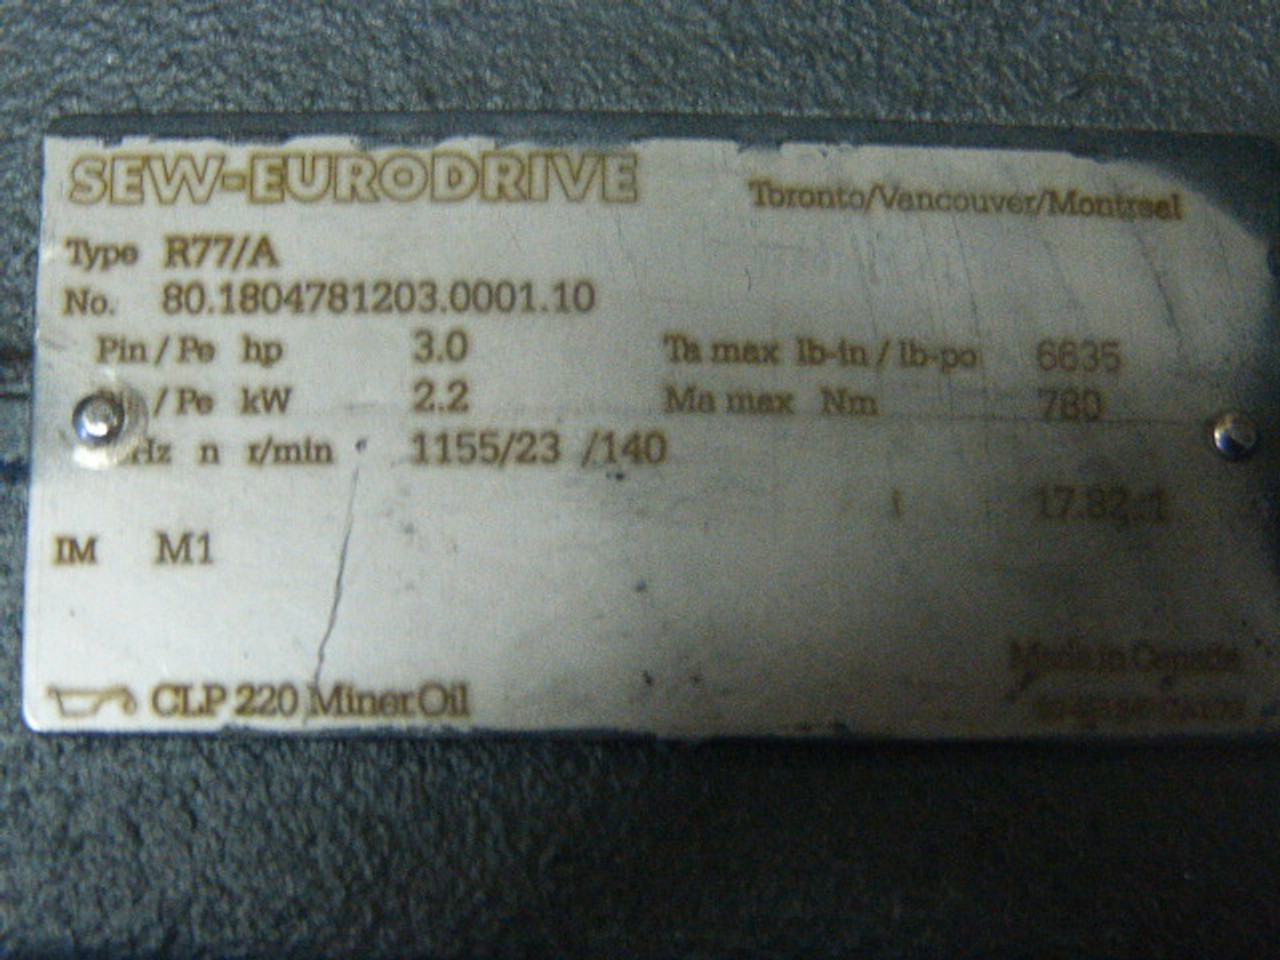 Sew-Eurodrive R77 VU31 80.1804781203.0001.10 Varibloc Speed Gear Unit ! RFB !